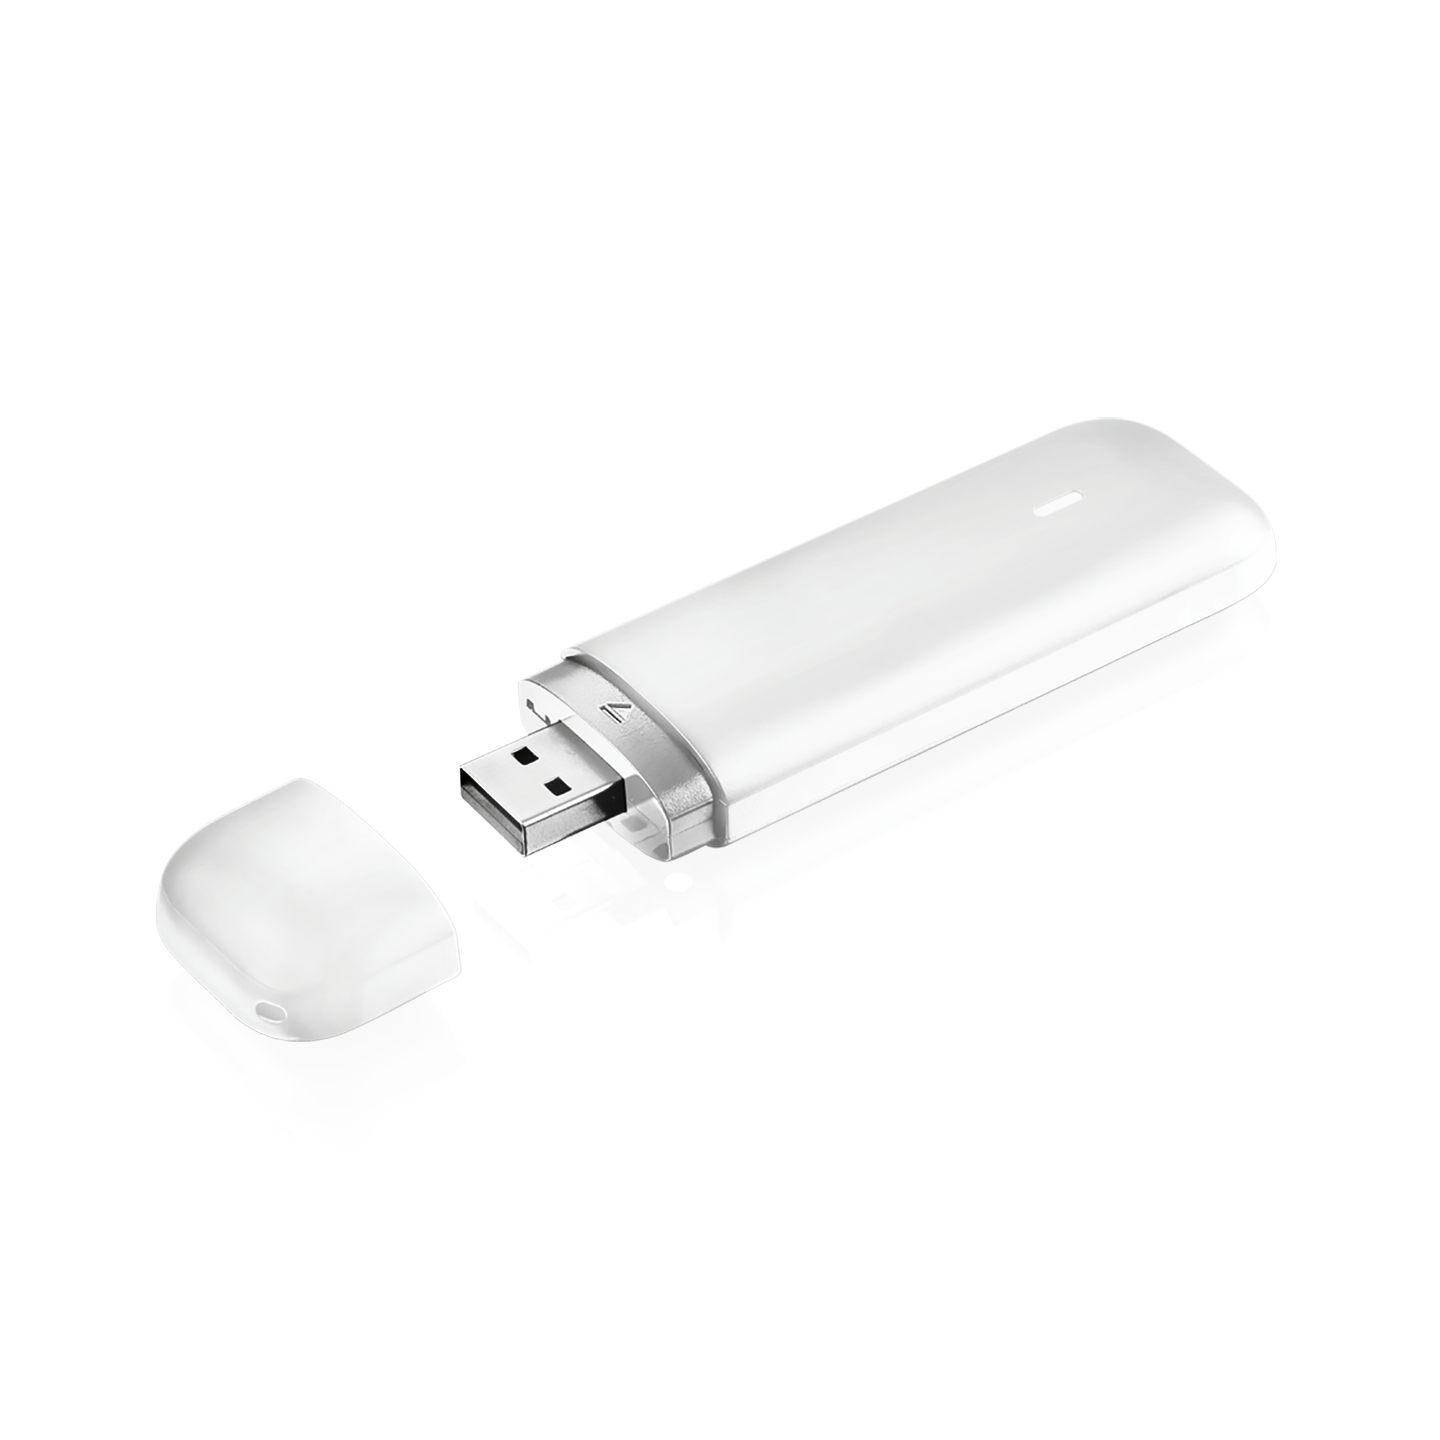 CU8210-D004-0200 | LTE USB stick for North America